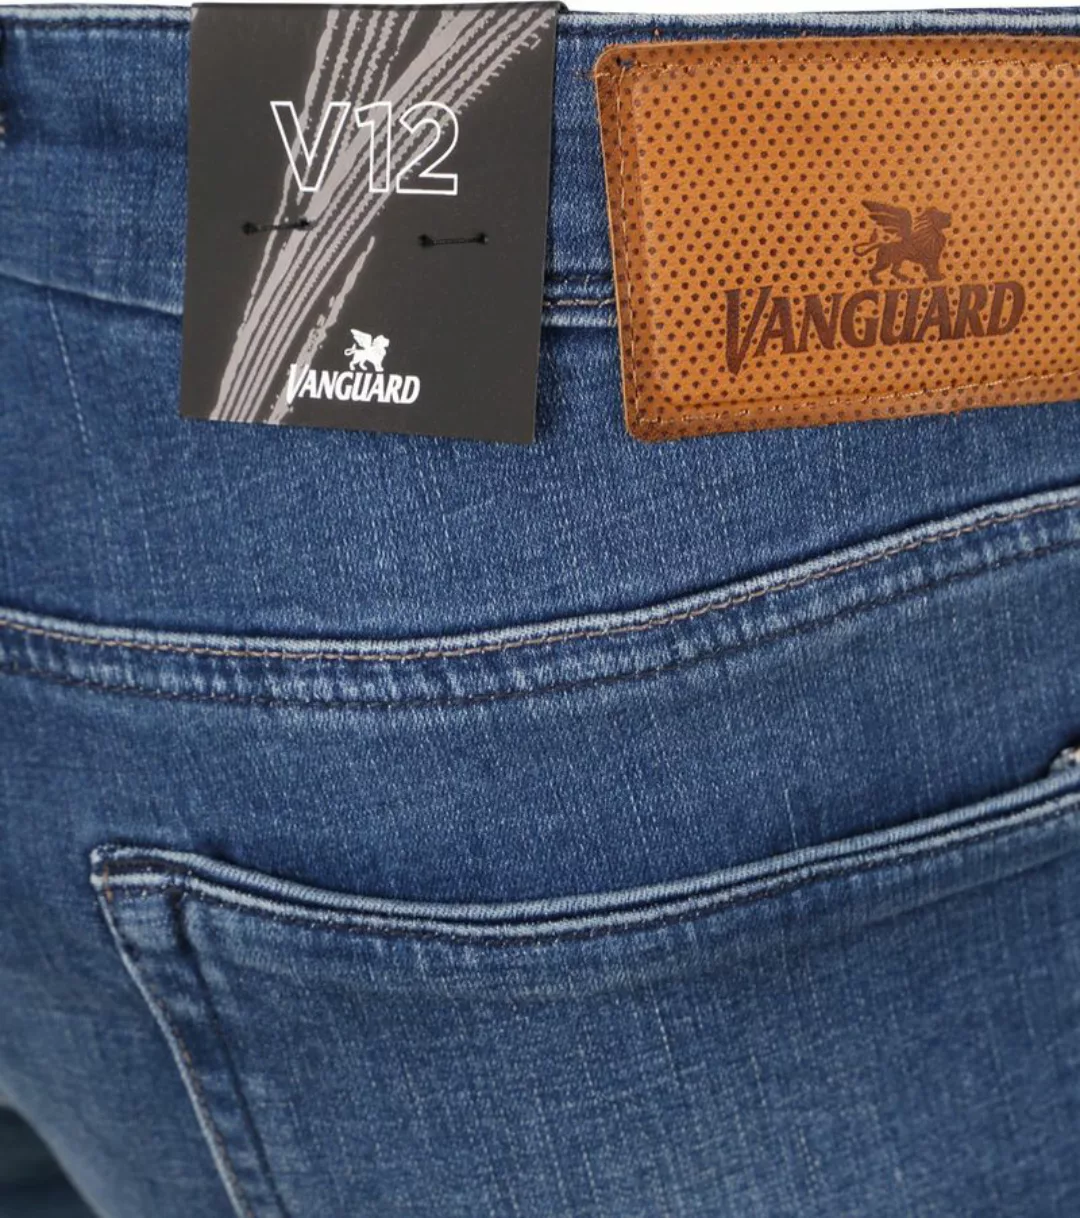 Vanguard Jeans V12 Rider Blau FIB - Größe W 30 - L 34 günstig online kaufen